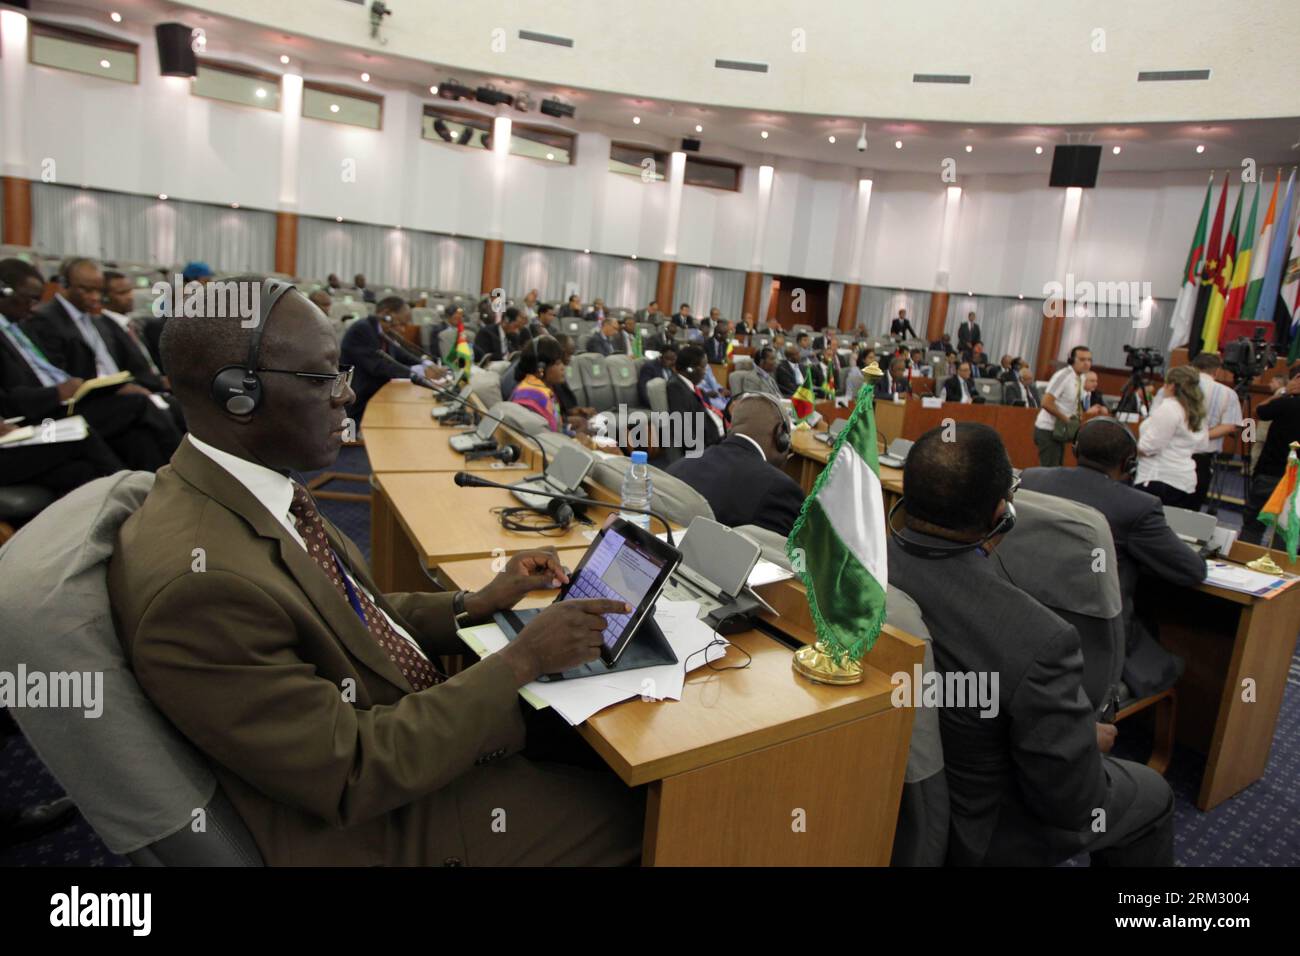 Bildnummer : 59919629 Datum : 29.06.2013 Copyright : imago/Xinhua (130629) -- ALGER, 29 juin 2013 (Xinhua) -- des représentants des quatre pays du noyau (Algérie, Mali, Mauritanie et Niger) participent à la réunion ministérielle du Conseil de paix et de sécurité de l Union africaine, qui débute au Palais des Nations à Alger, Algérie, le 29 juin 2013. La réunion a été organisée pour évaluer la situation dans la région, en particulier au Mali, et pour exprimer la détermination à poursuivre la lutte contre le terrorisme et la criminalité transnationale organisée dans la région du Sahel. (Xinhua/Mohamed Kadri) Banque D'Images